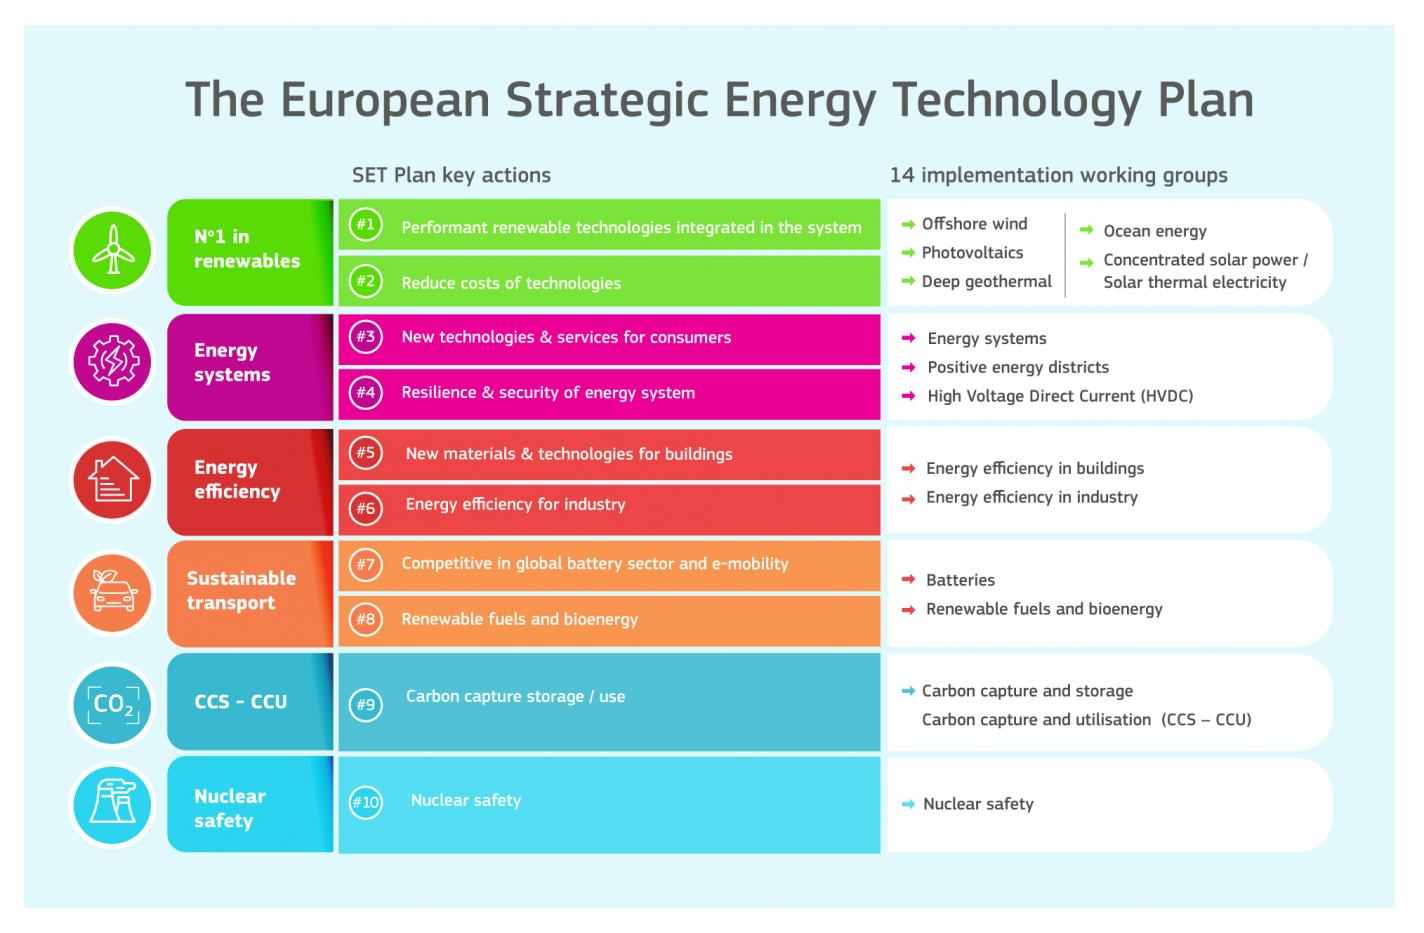 Un prospetto sintetico del nuovo piano strategico per le tecnologie energetiche (SET Plan) con le diverse azioni suddivise in base ai colori